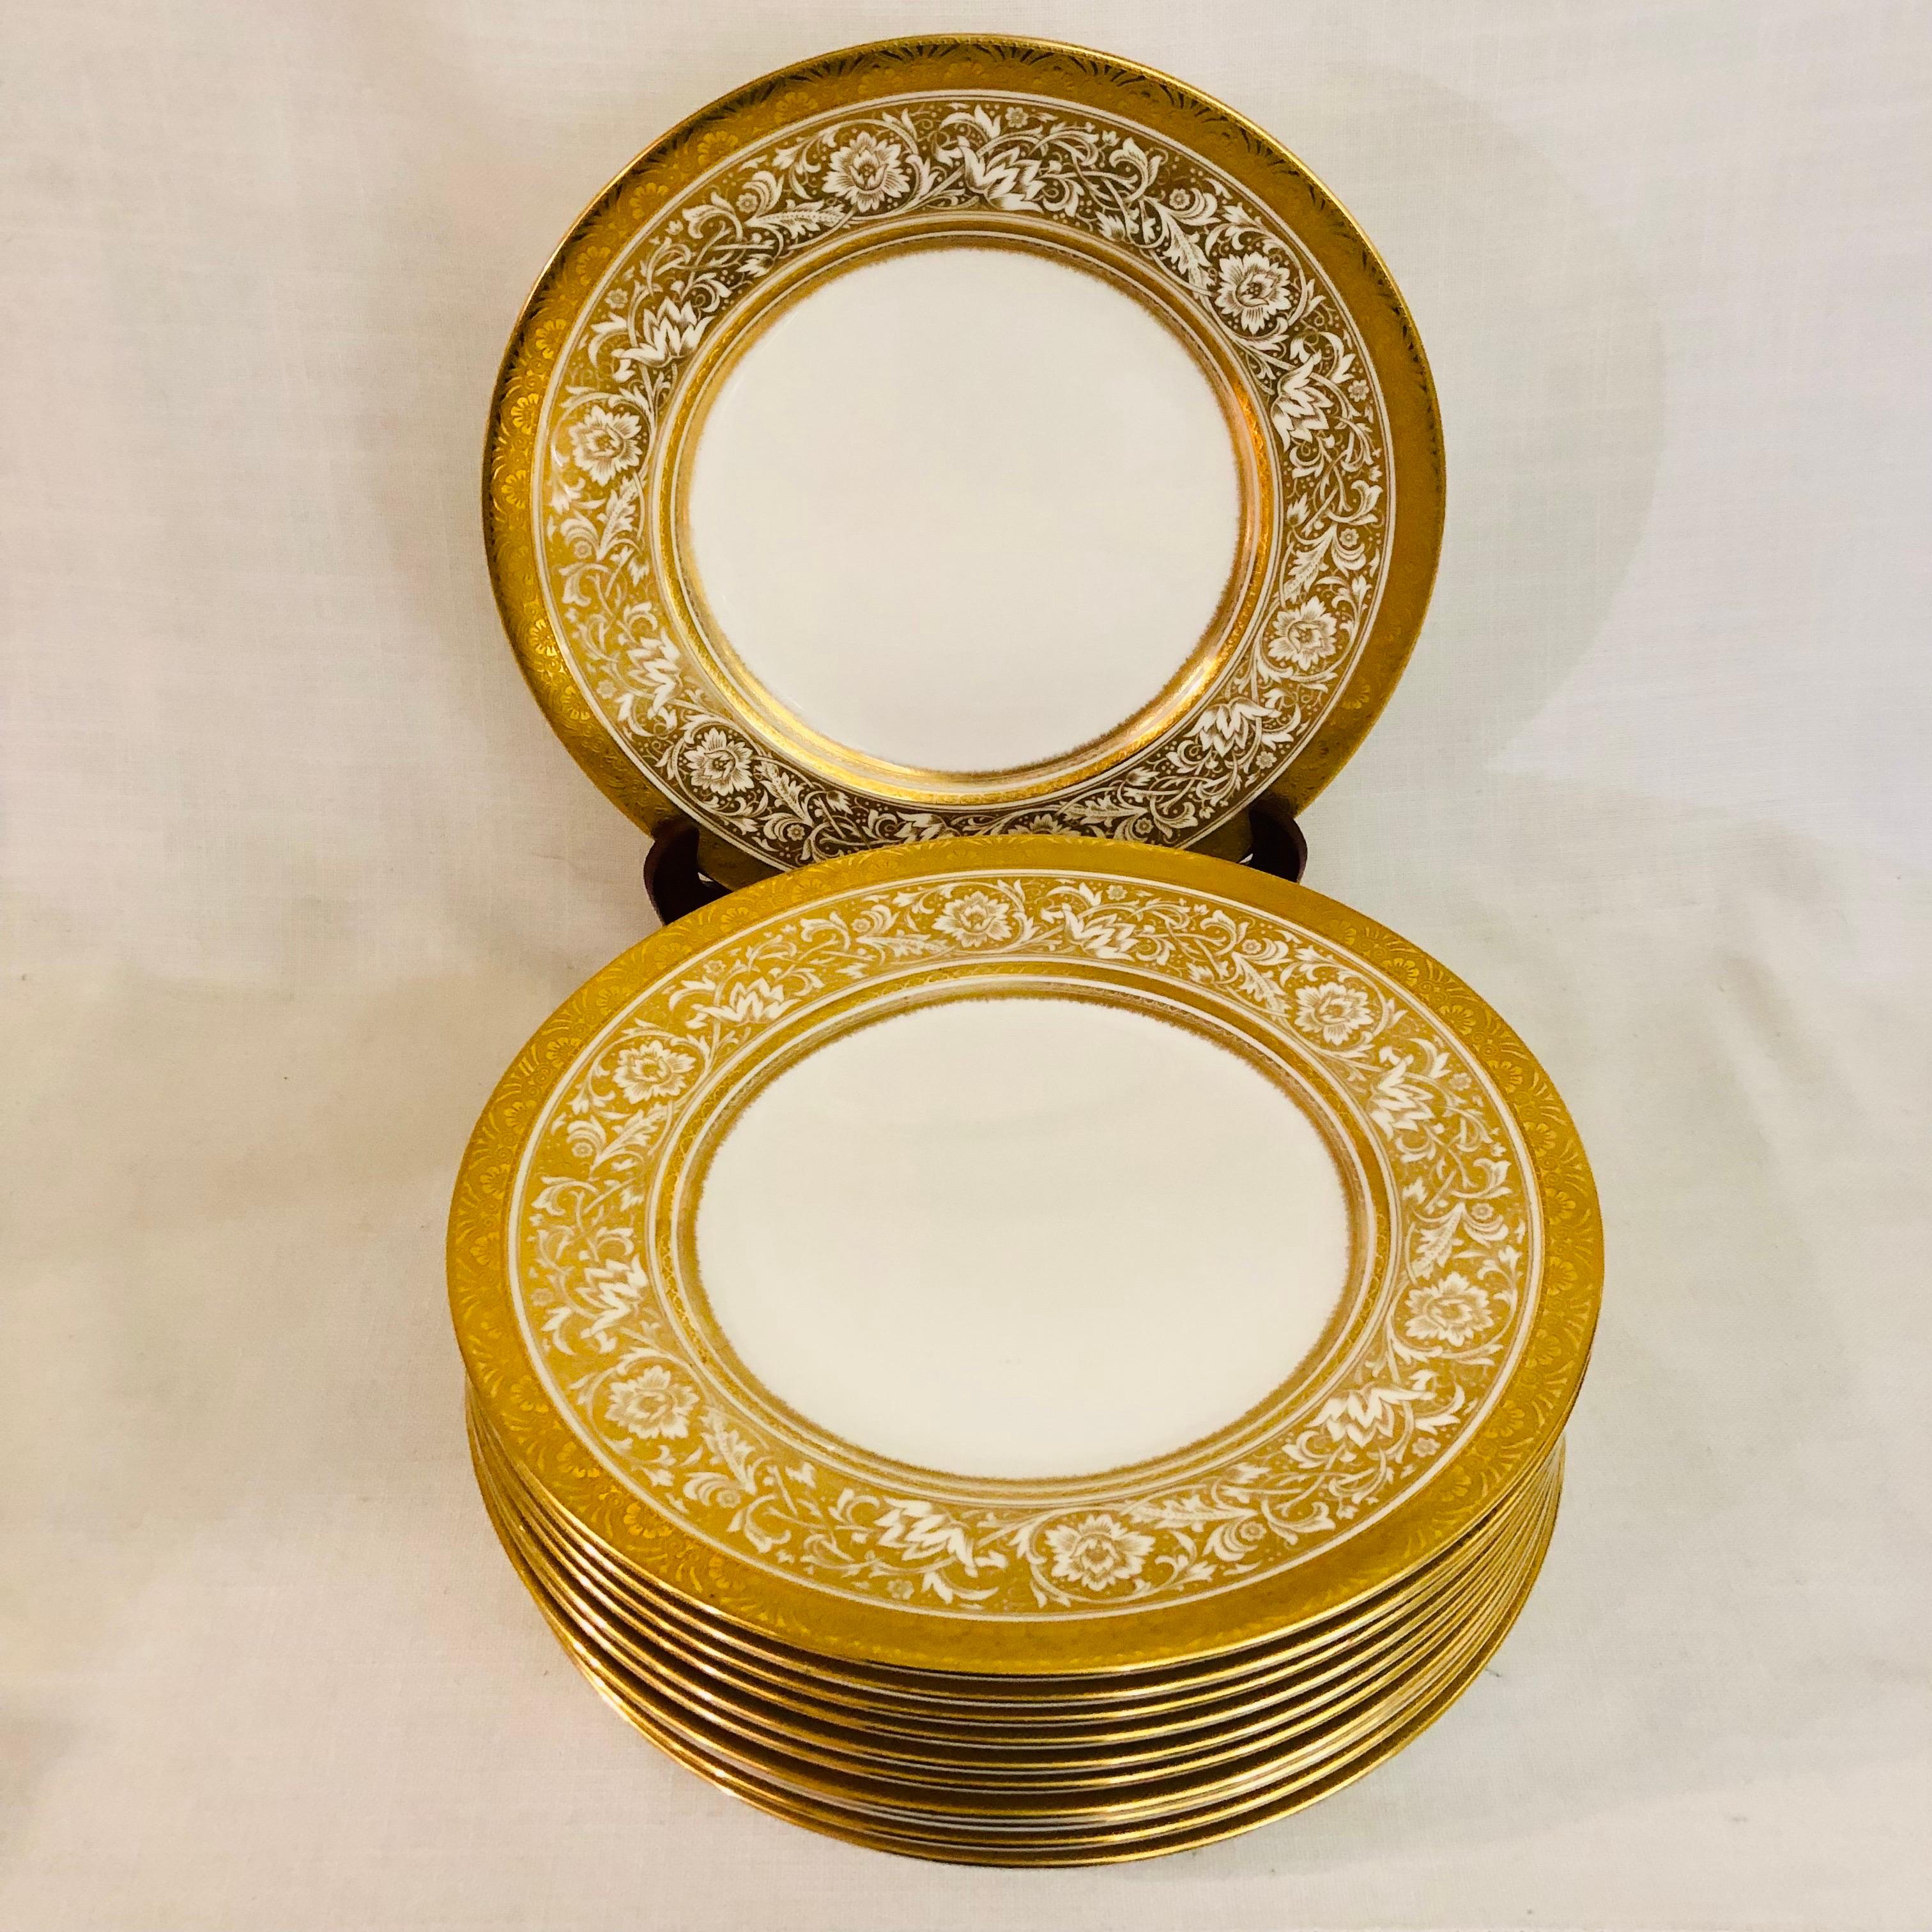 Dies ist ein exquisiter Satz von elf Minton Porcelain Ball Esstellern. Sie haben ein wunderschönes goldenes und weißes Arabeskendekor aus Blumen mit einem geprägten, vergoldeten Rand. Diese Minton-Porzellan-Kugelteller wurden exklusiv für die